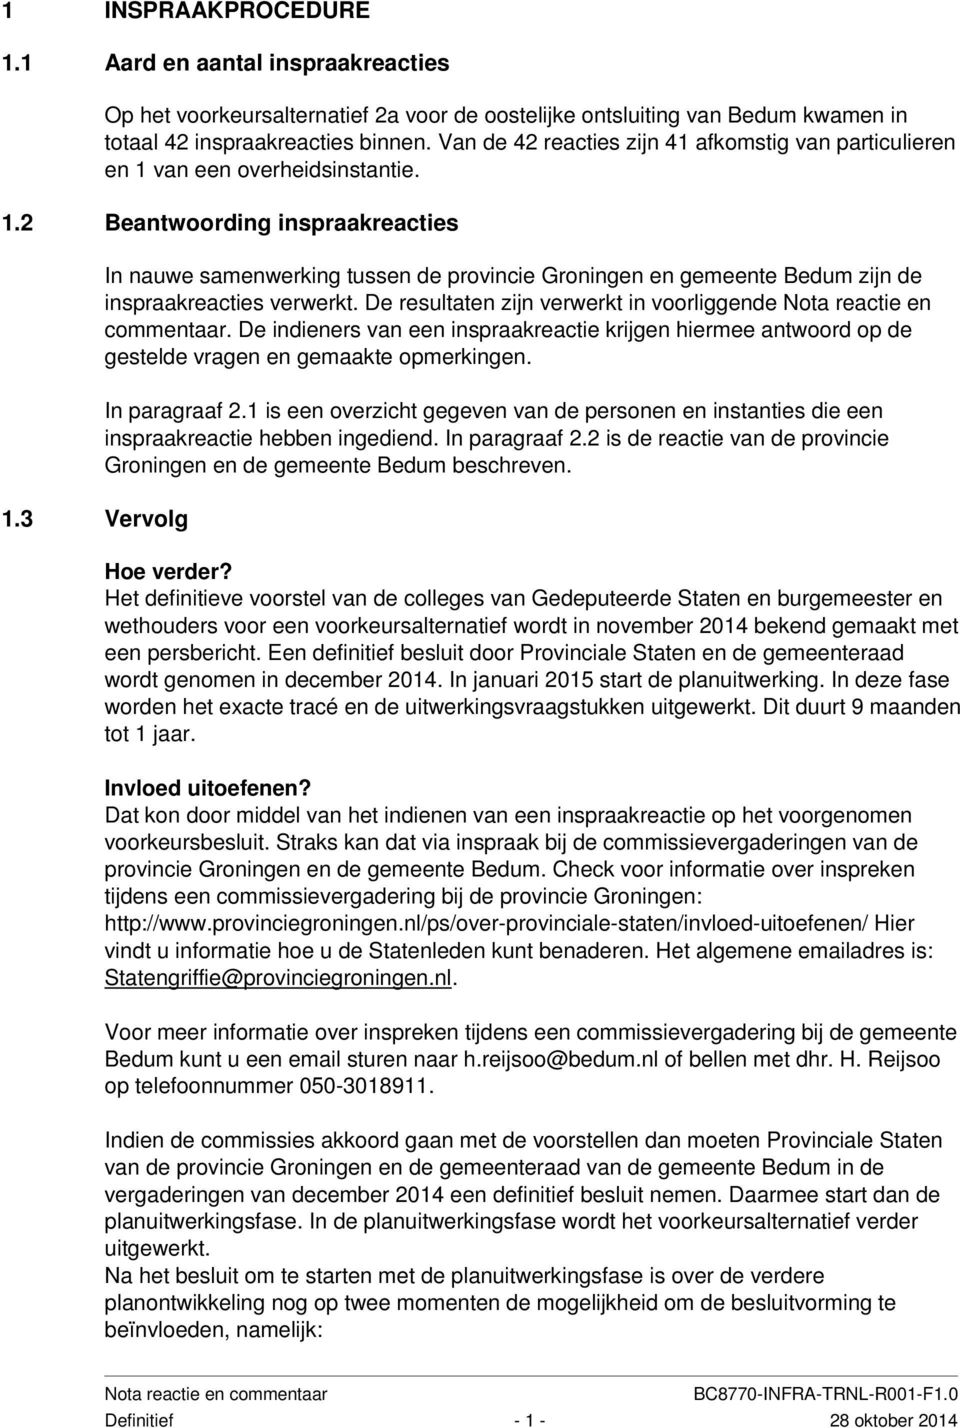 3 Vervolg In nauwe samenwerking tussen de provincie Groningen en gemeente Bedum zijn de inspraakreacties verwerkt. De resultaten zijn verwerkt in voorliggende Nota reactie en commentaar.